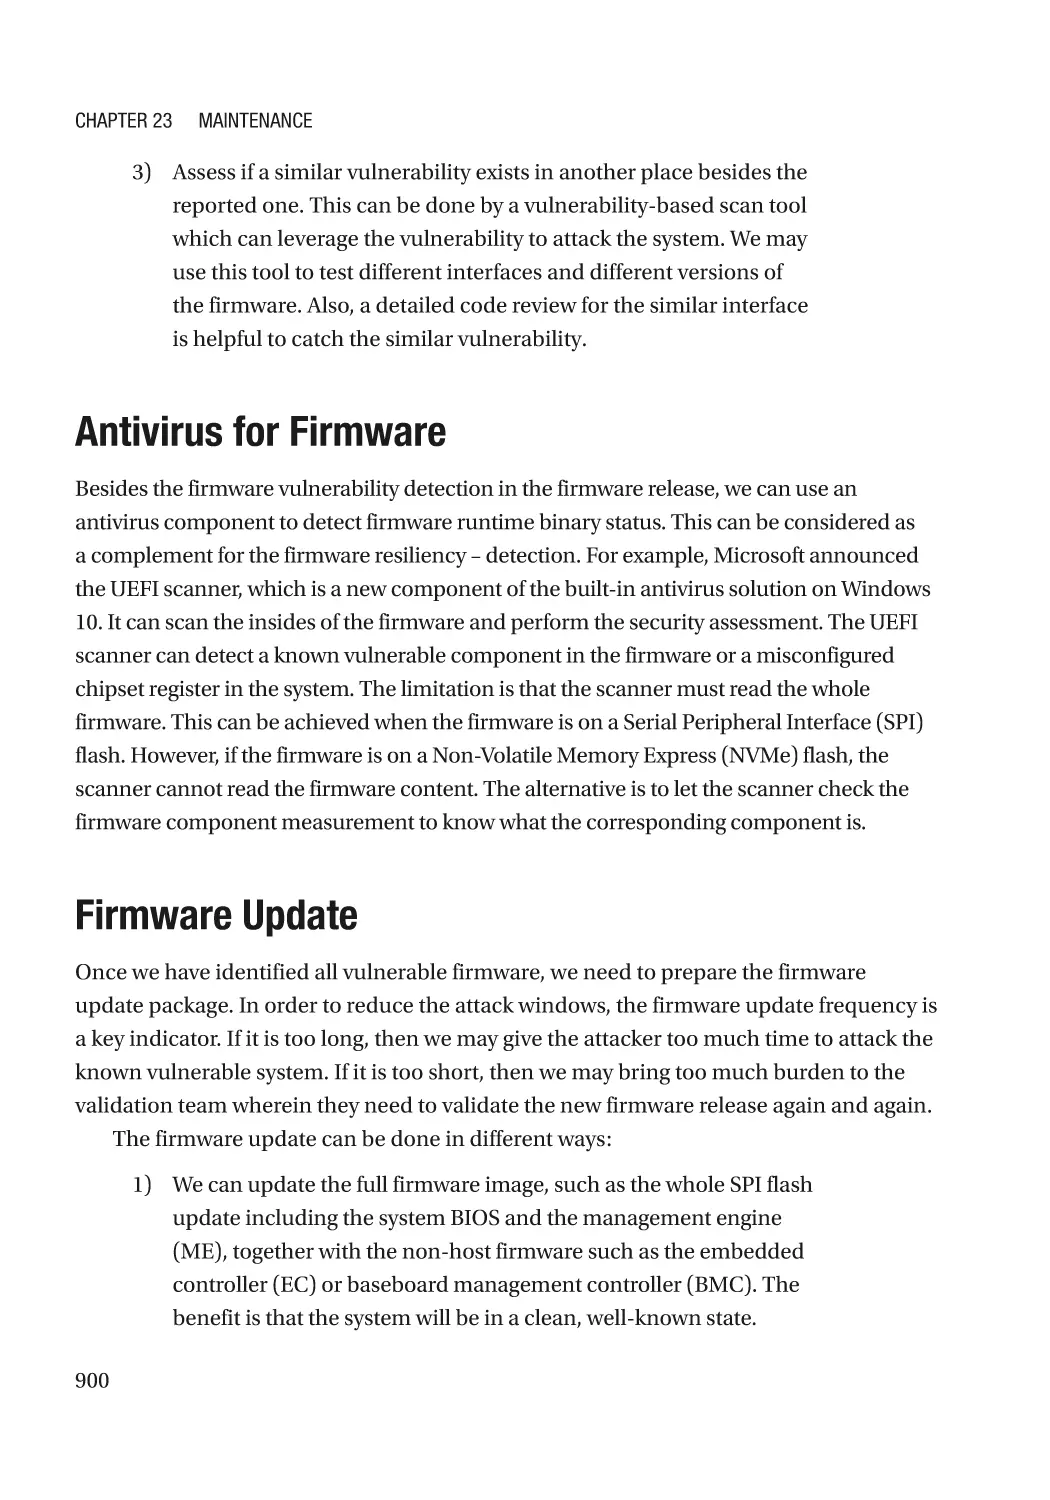 Antivirus for Firmware
Firmware Update